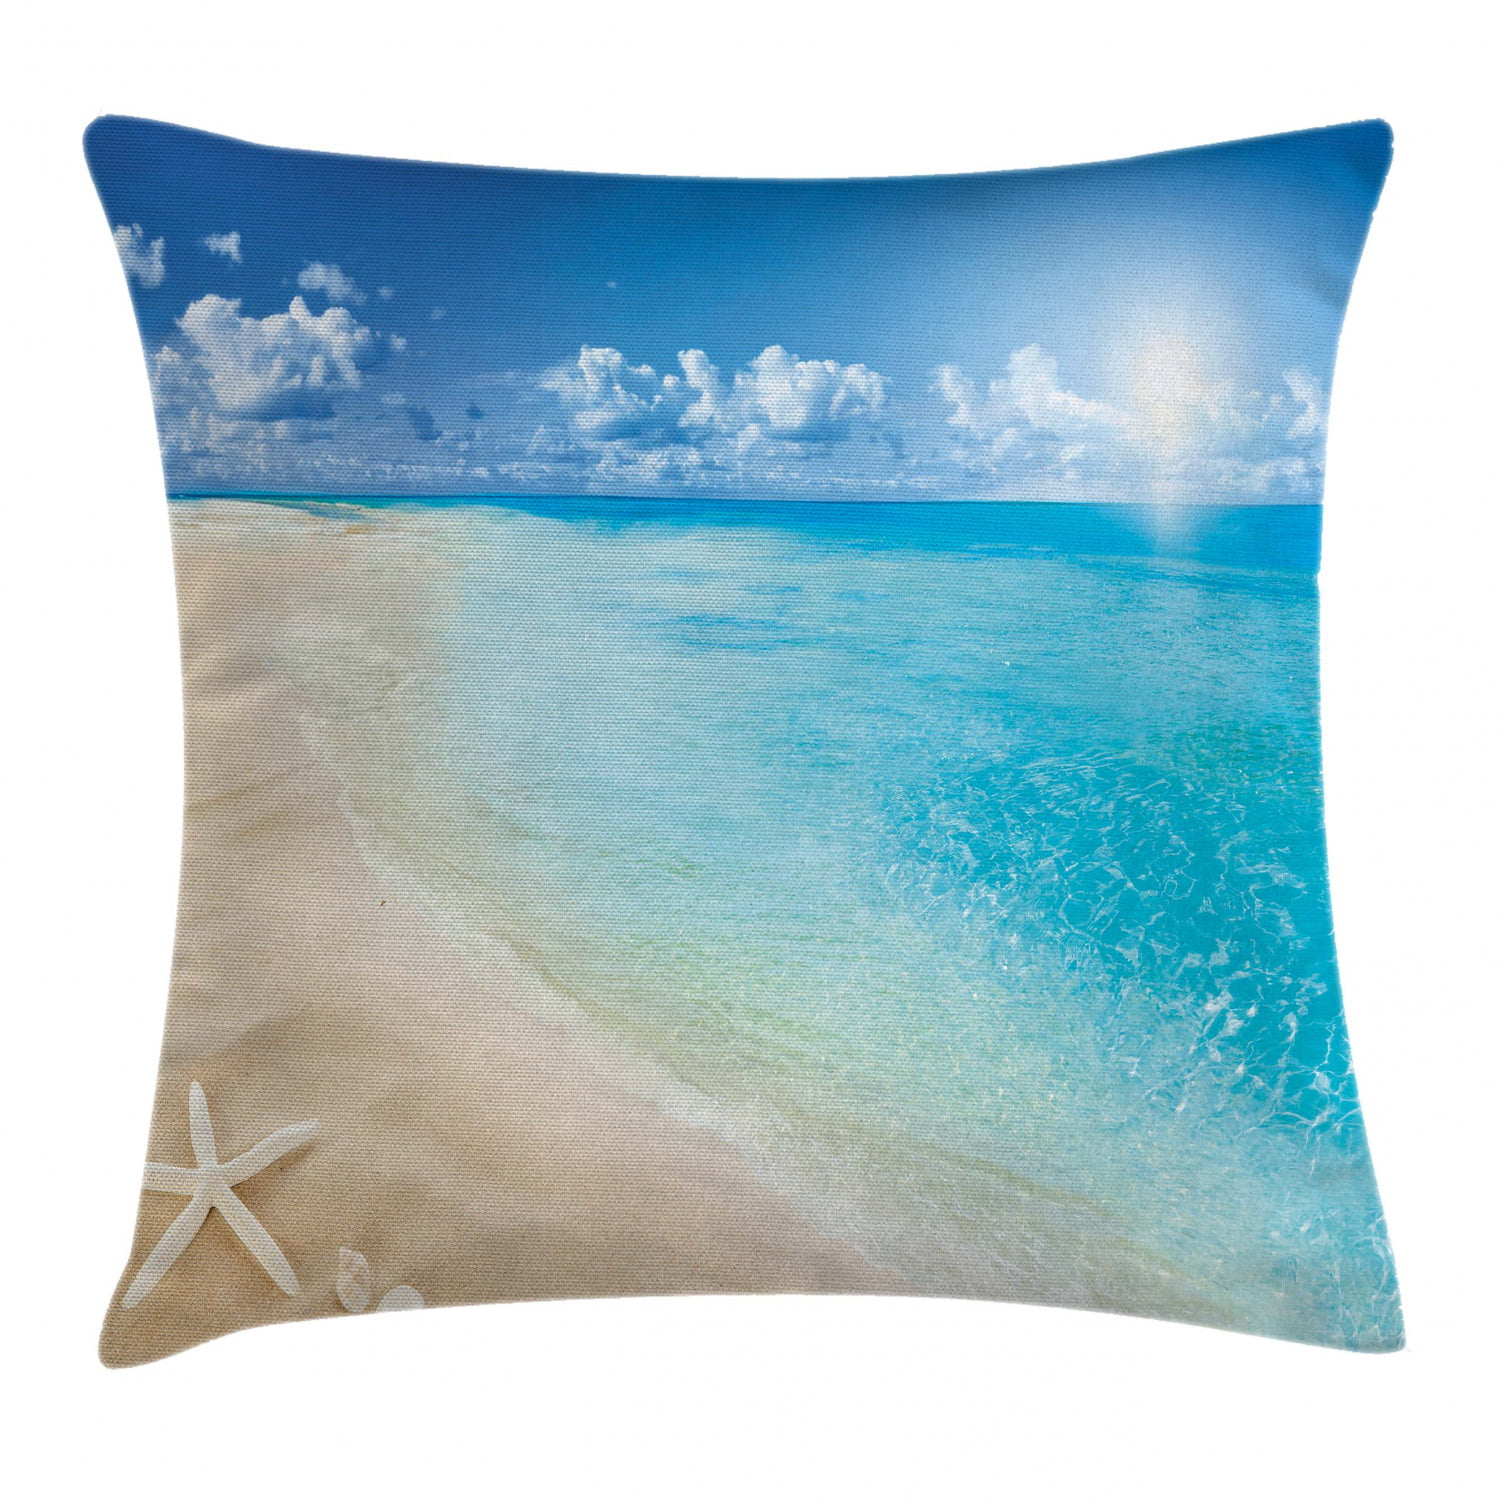 Pillow cover 18" Aqua Teal Blue Sea Coral Tropical Coastal ocean Beachy Starfish 